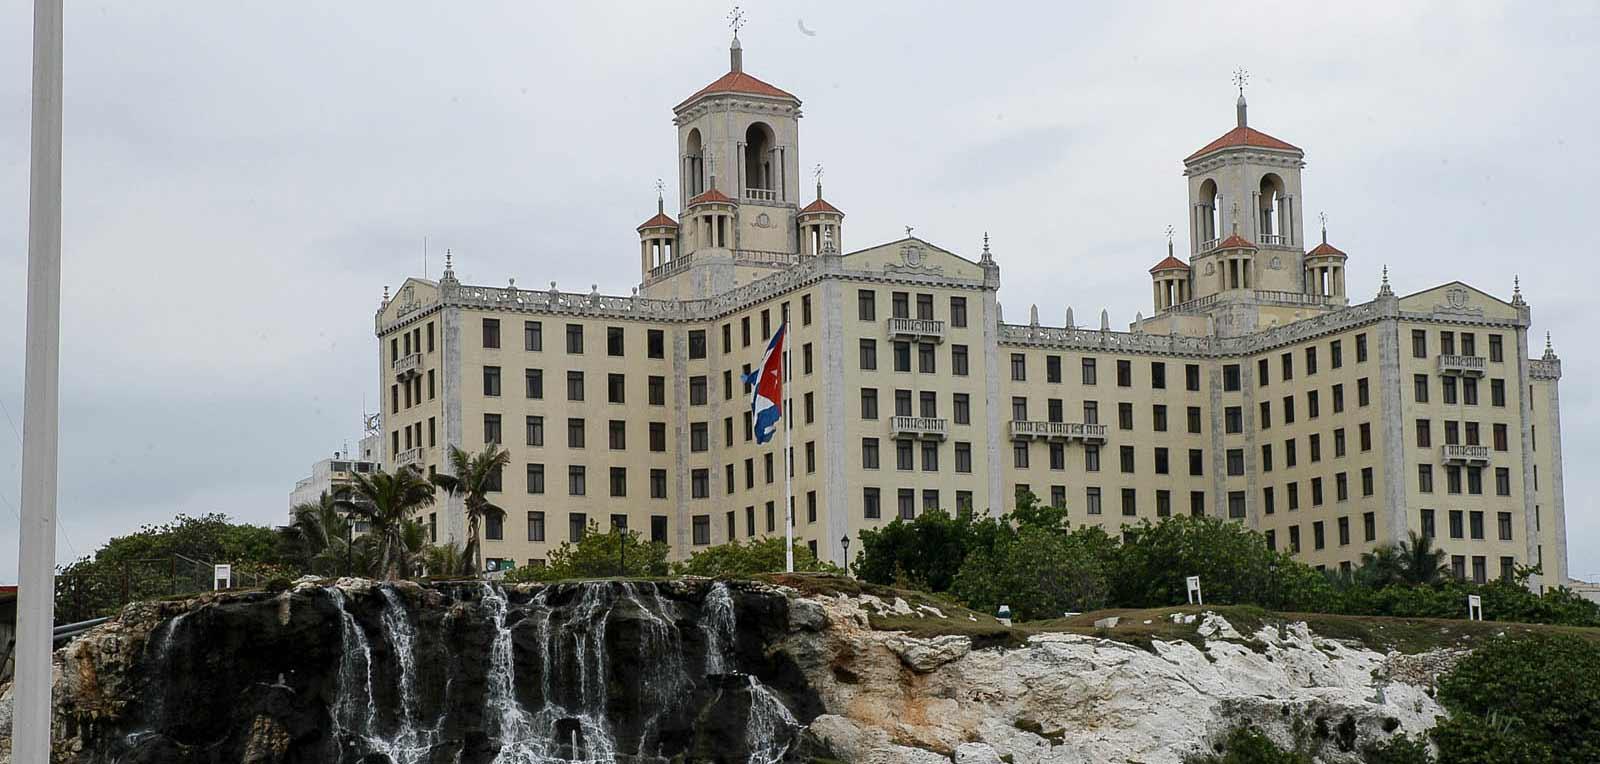 Hoteles cubanos reciben importantes premios internacionales